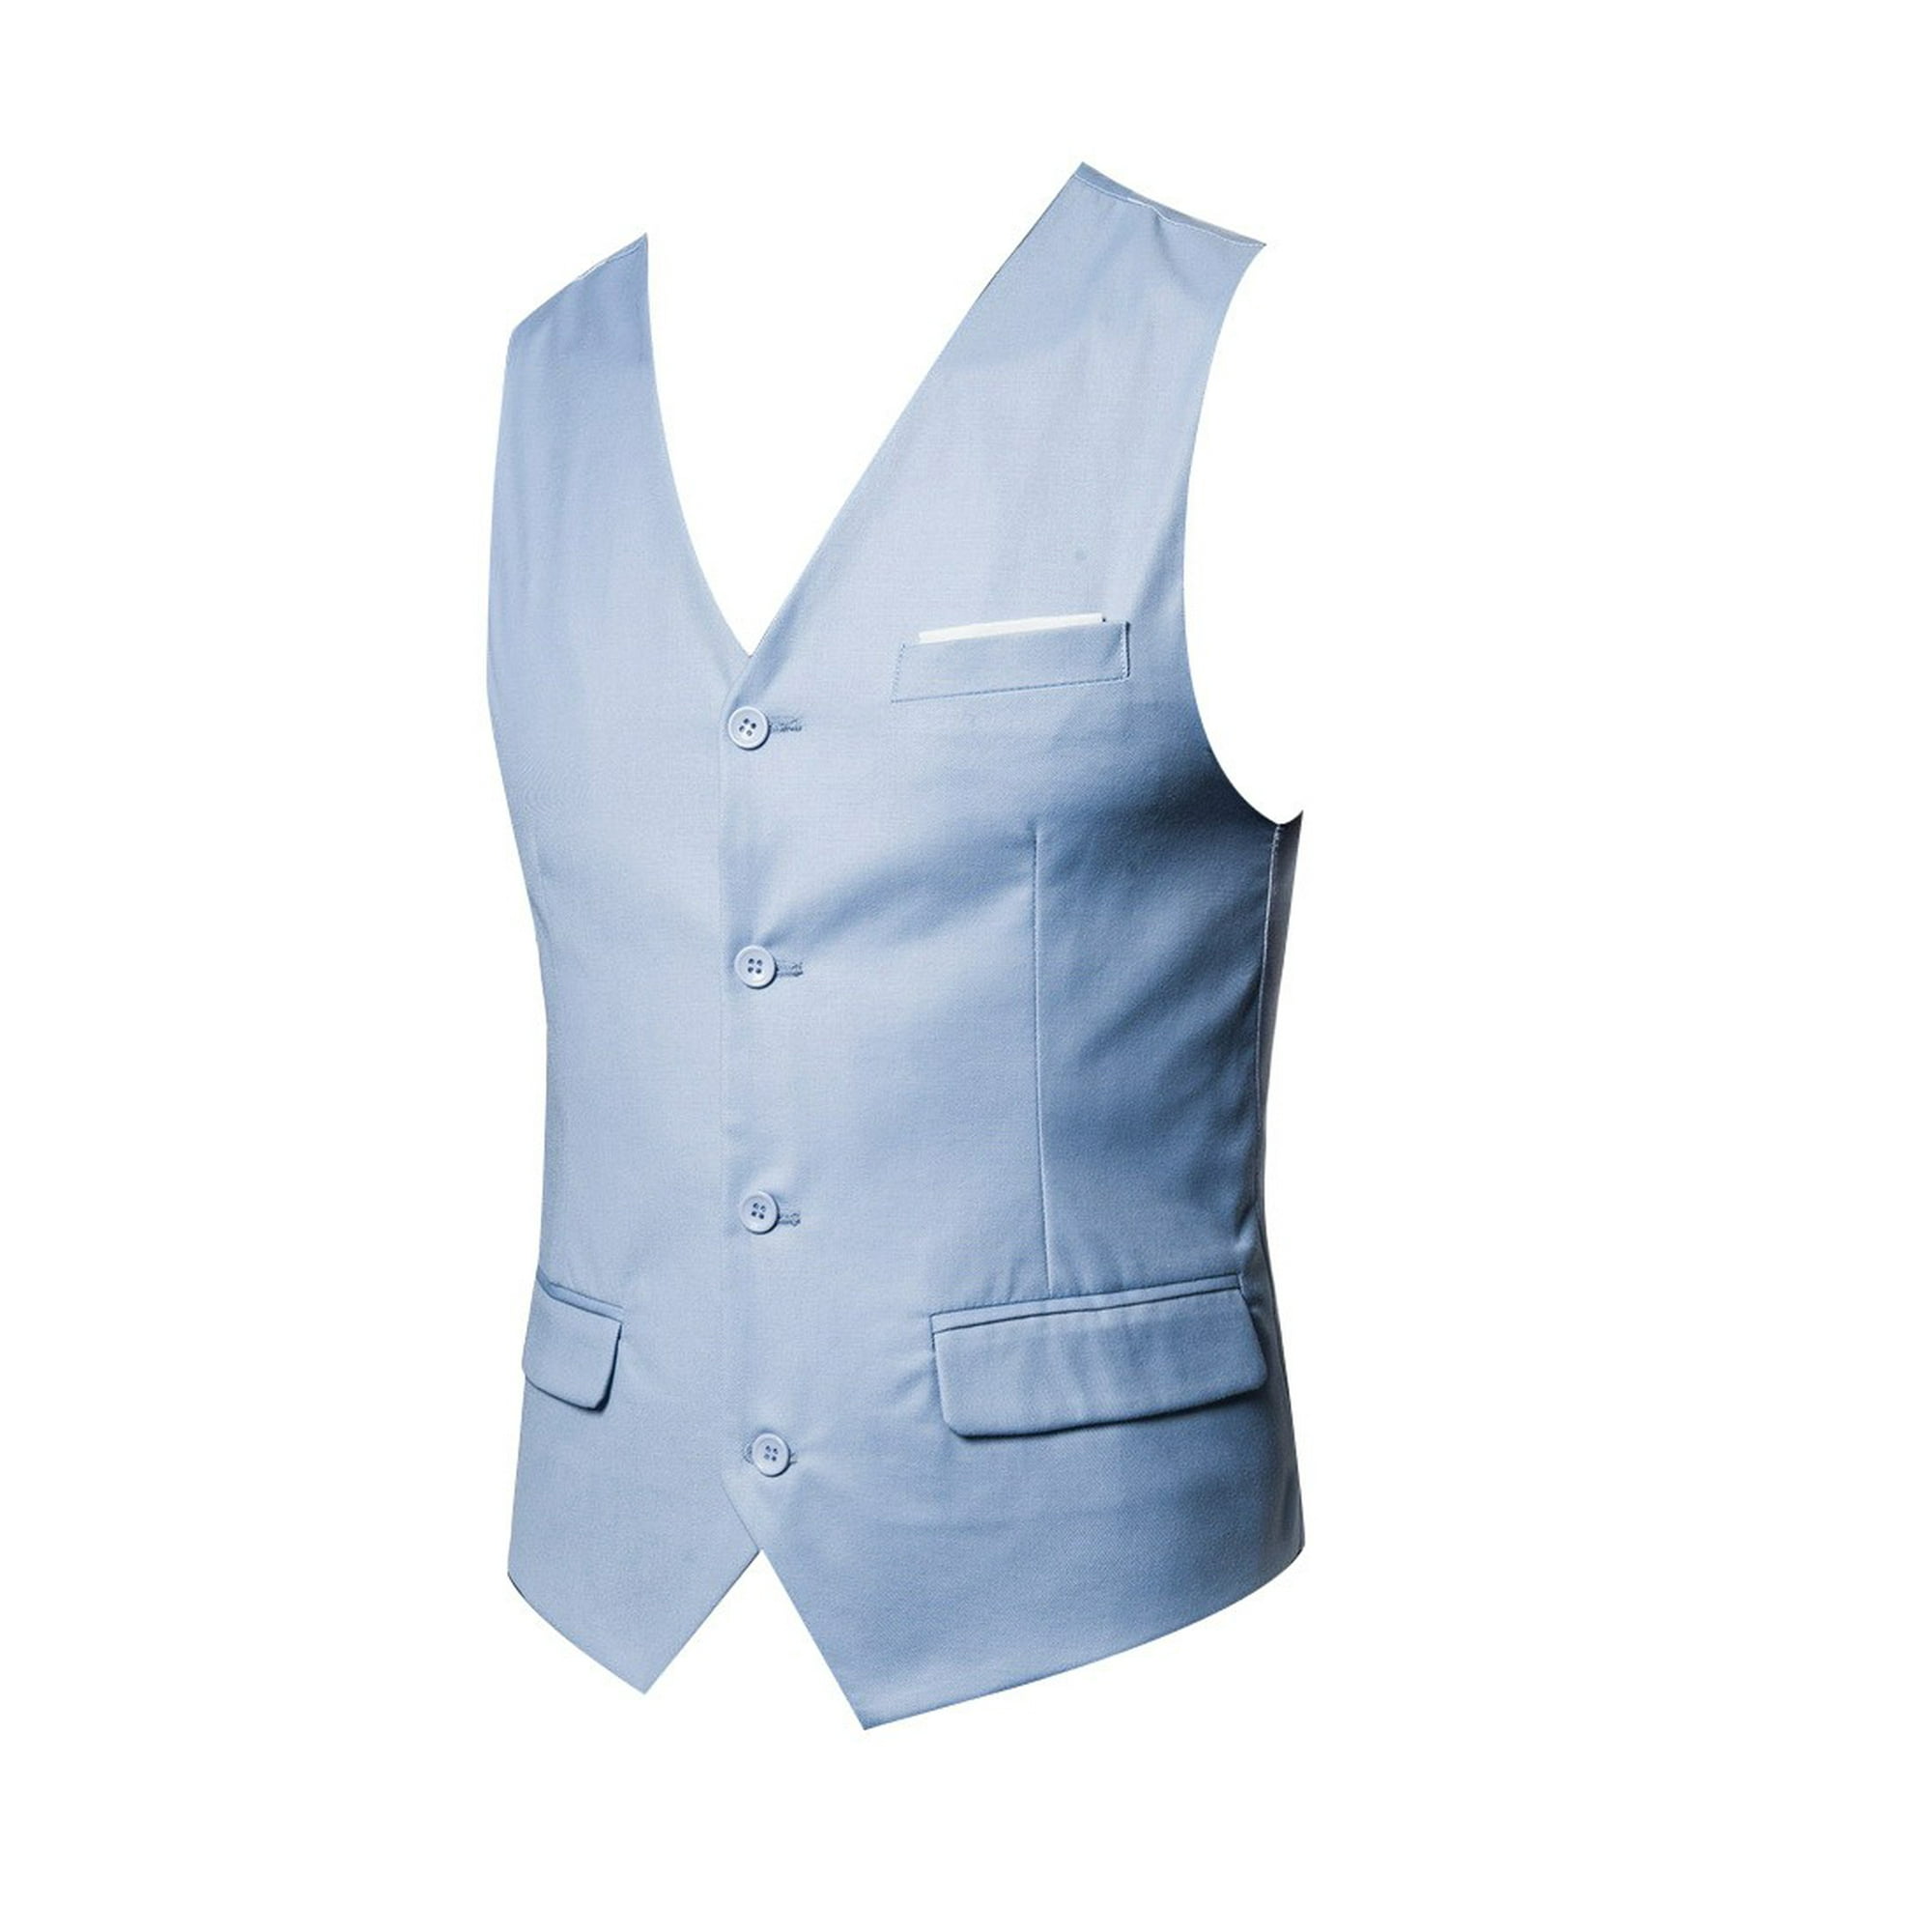 Chaquetas de Prendas de Vestir Casuales Para Hombres Otoño Invierno Formal  Business Tuxedo Suit Chal Odeerbi ODB-4